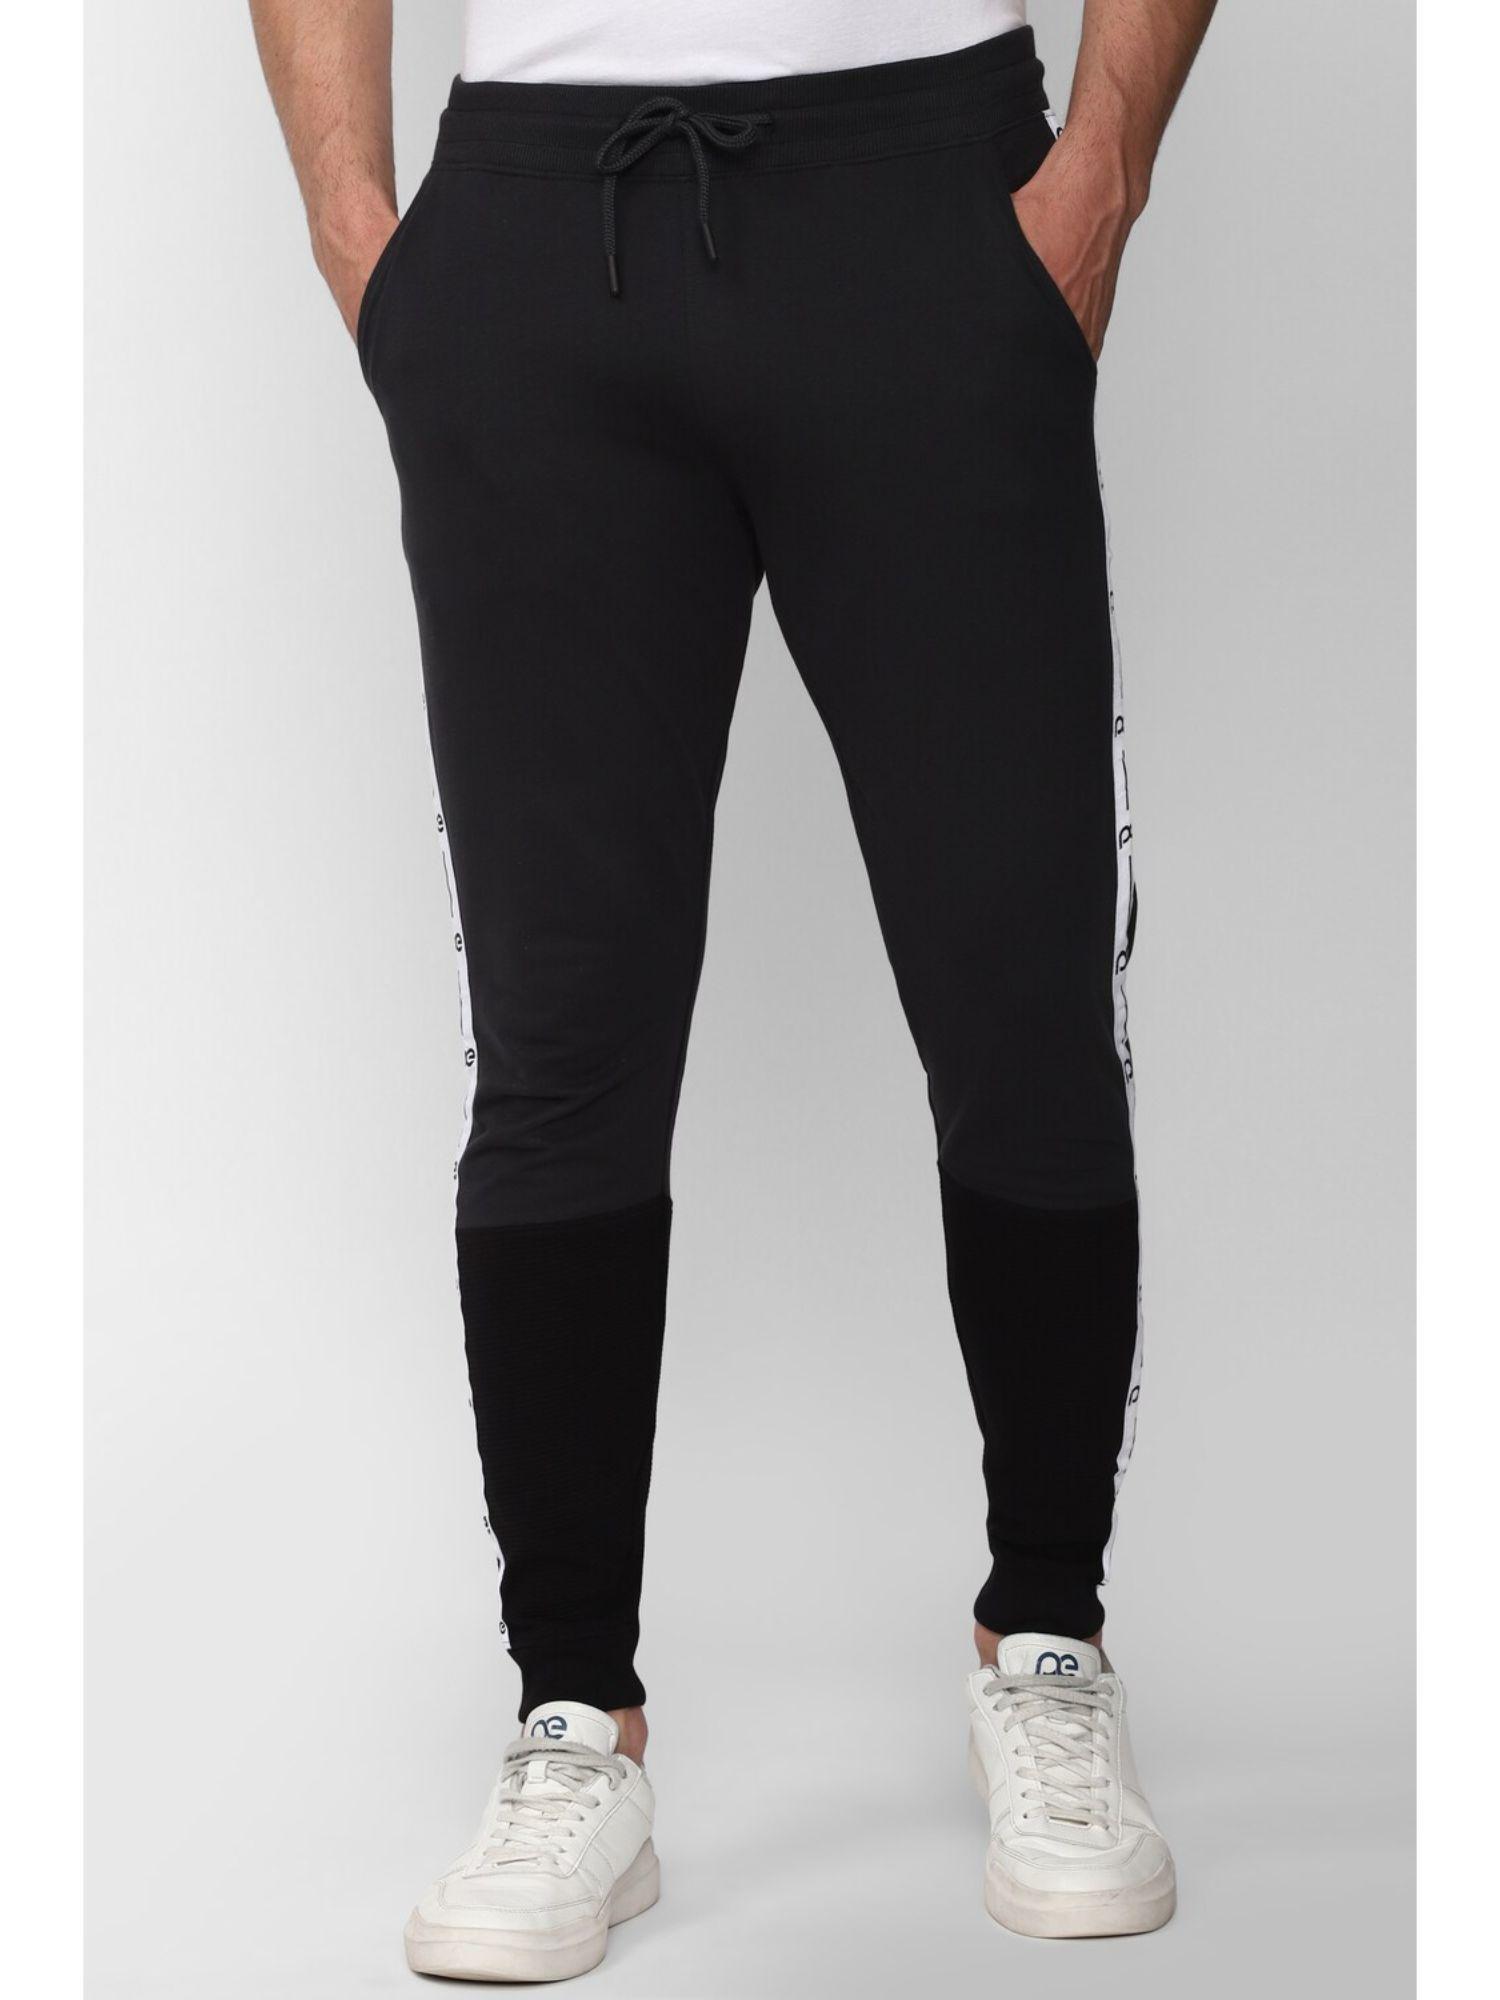 men-black-print-casual-jogger-pants